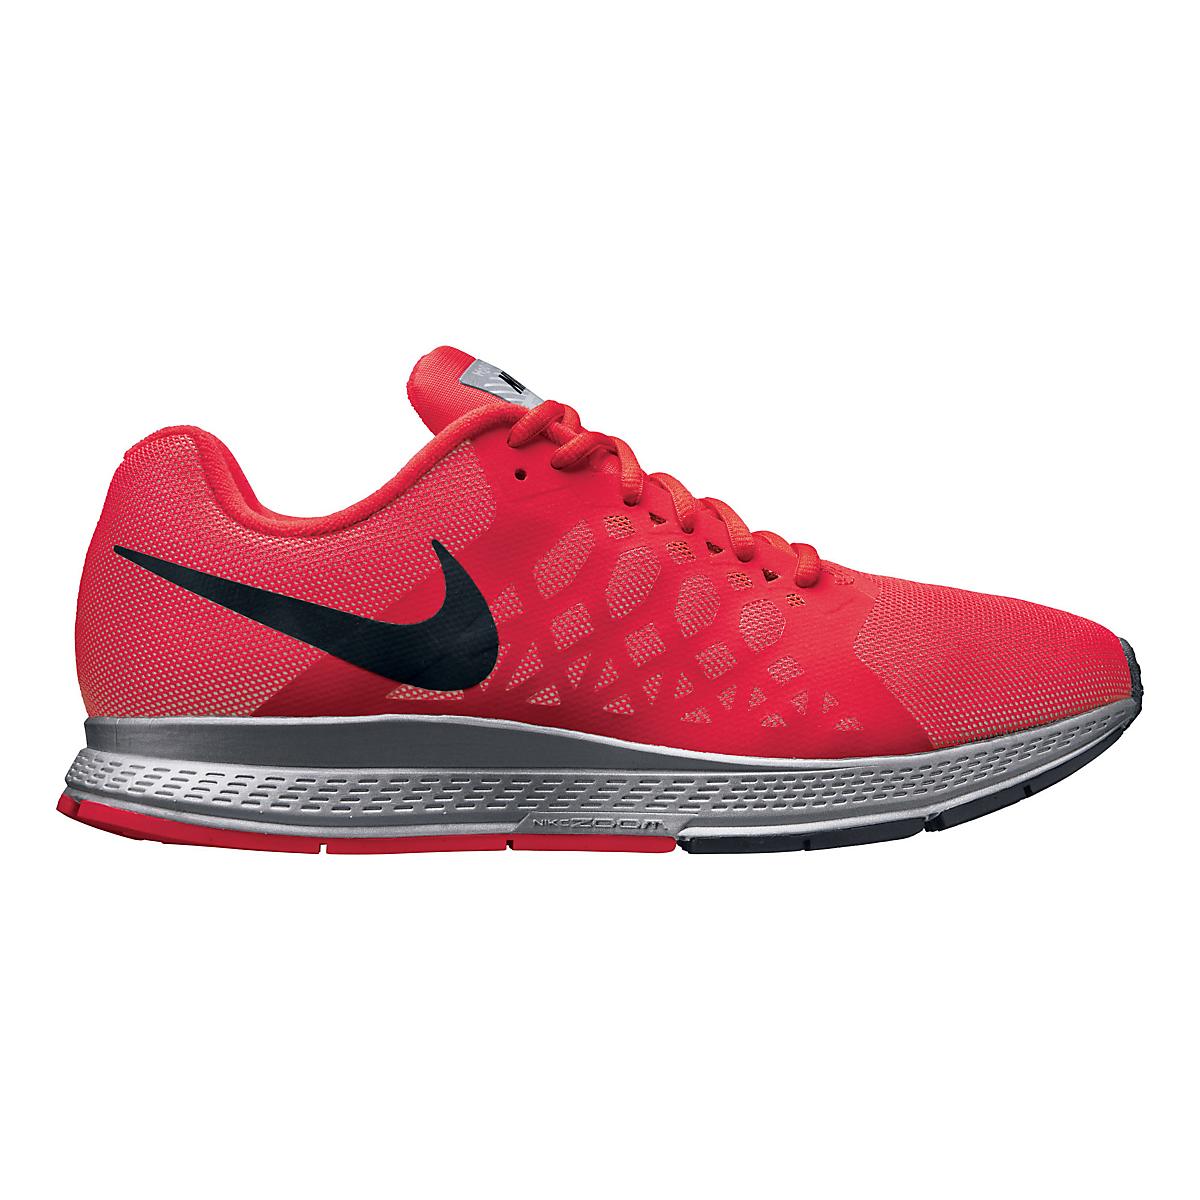 Mens Nike Air Zoom Pegasus 31 Flash Running Shoe at Road Runner Sports